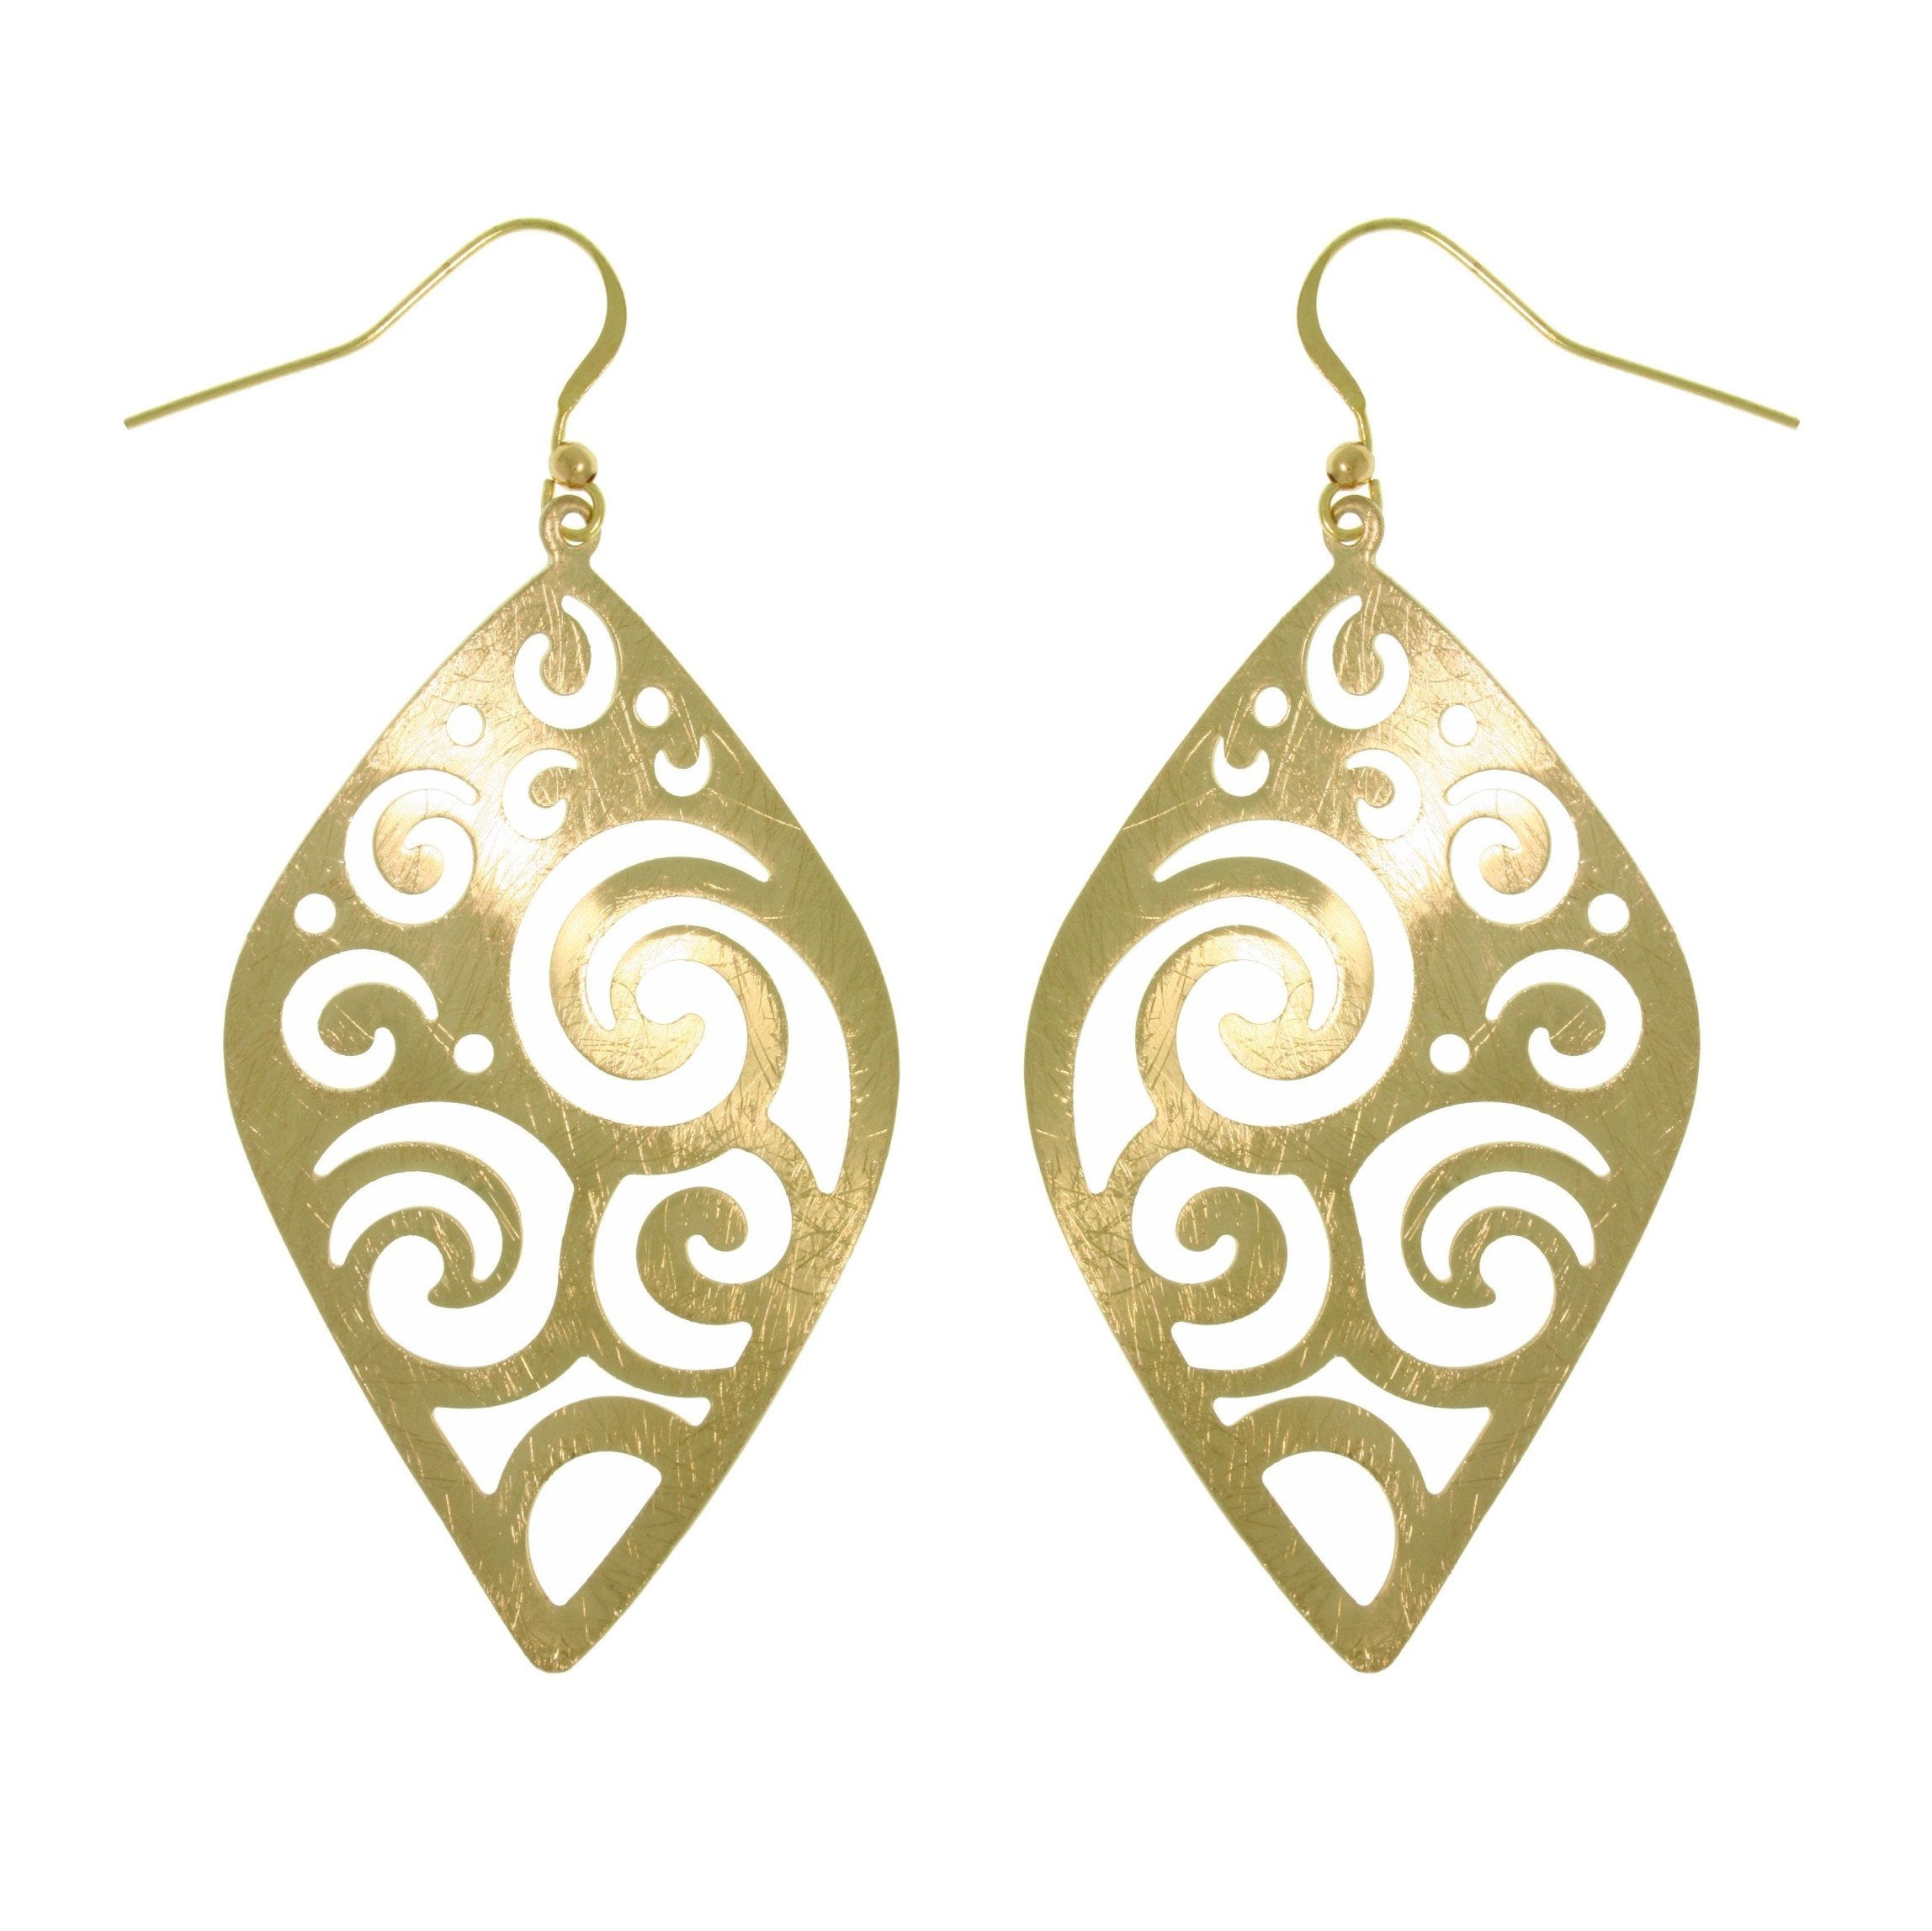 Swirl Earrings - Goldtone Brass Weightless Large Diamond Shaped Wavy Filigree Swirl Dangle Earrings Fashion Jewelry